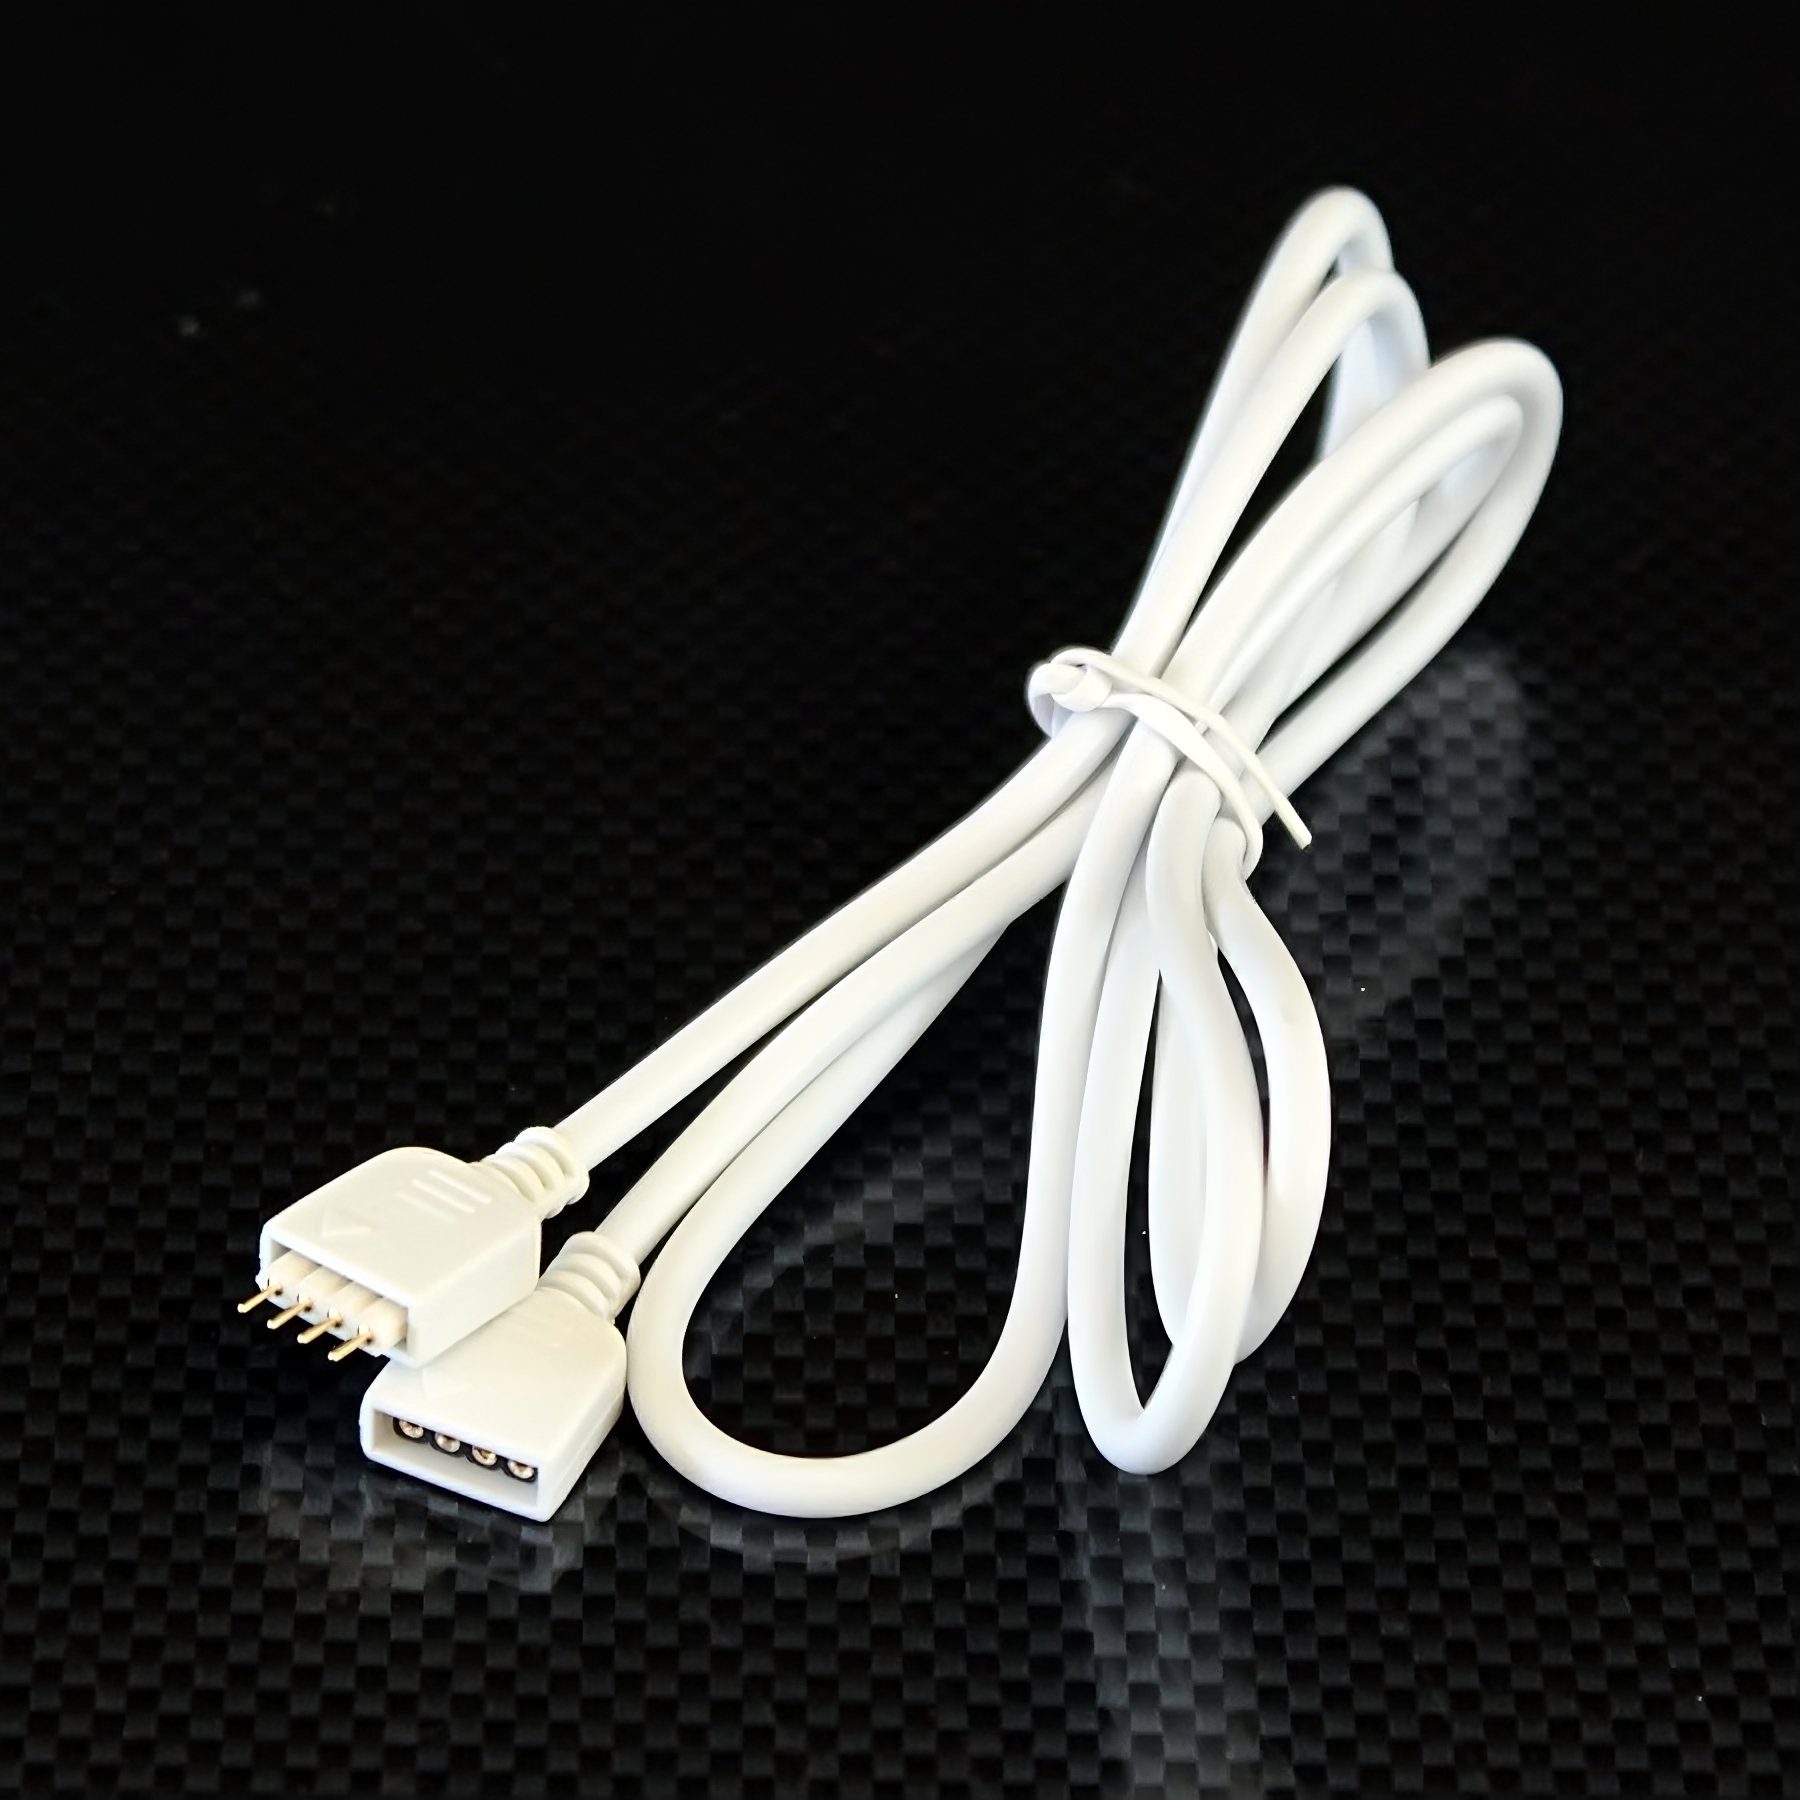 Ogeled Anschlusskabel, polig Schalter, Streifen LED-Leisten, LED, Strip, 4 Kabel Verteilerkabel, Stromkabel, mit Quick-System, 1m Kabel, LED, Kabel